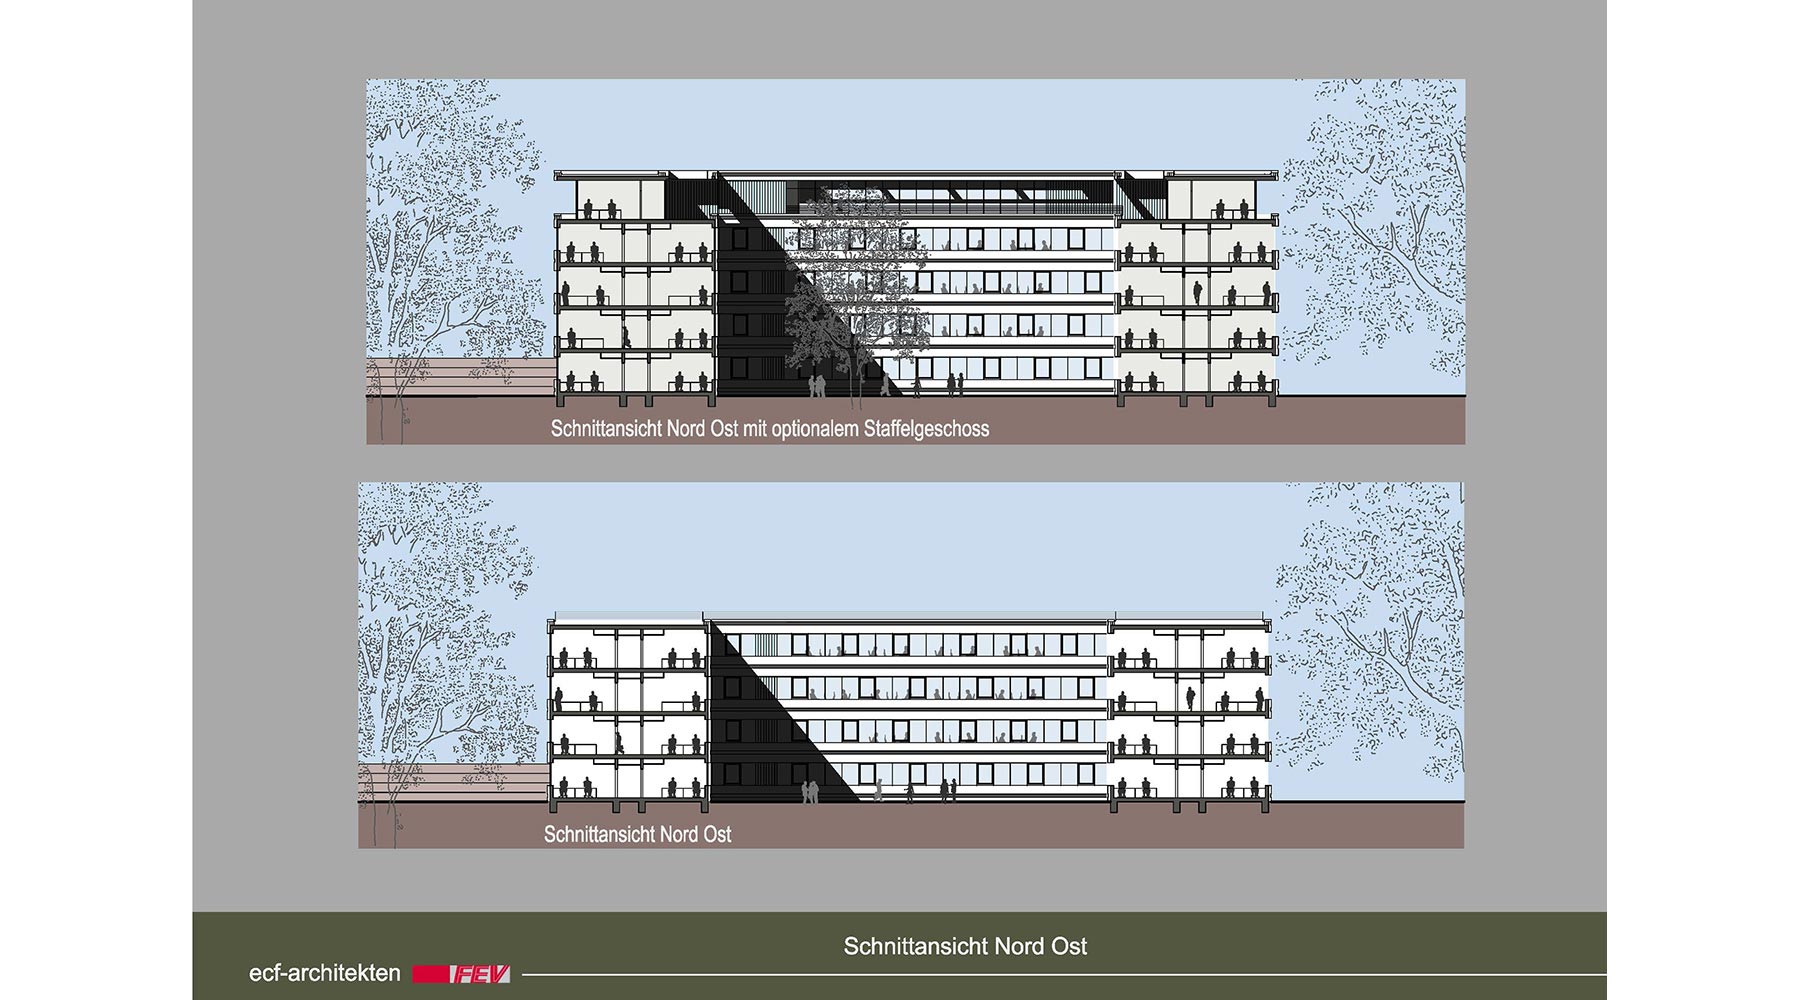 Machbarkeitsstudie für den Neubau eines Bürogebäudes in Aachen. Schnittansicht von Nord Ost. Oben mit optionalem Staffelgeschoss.